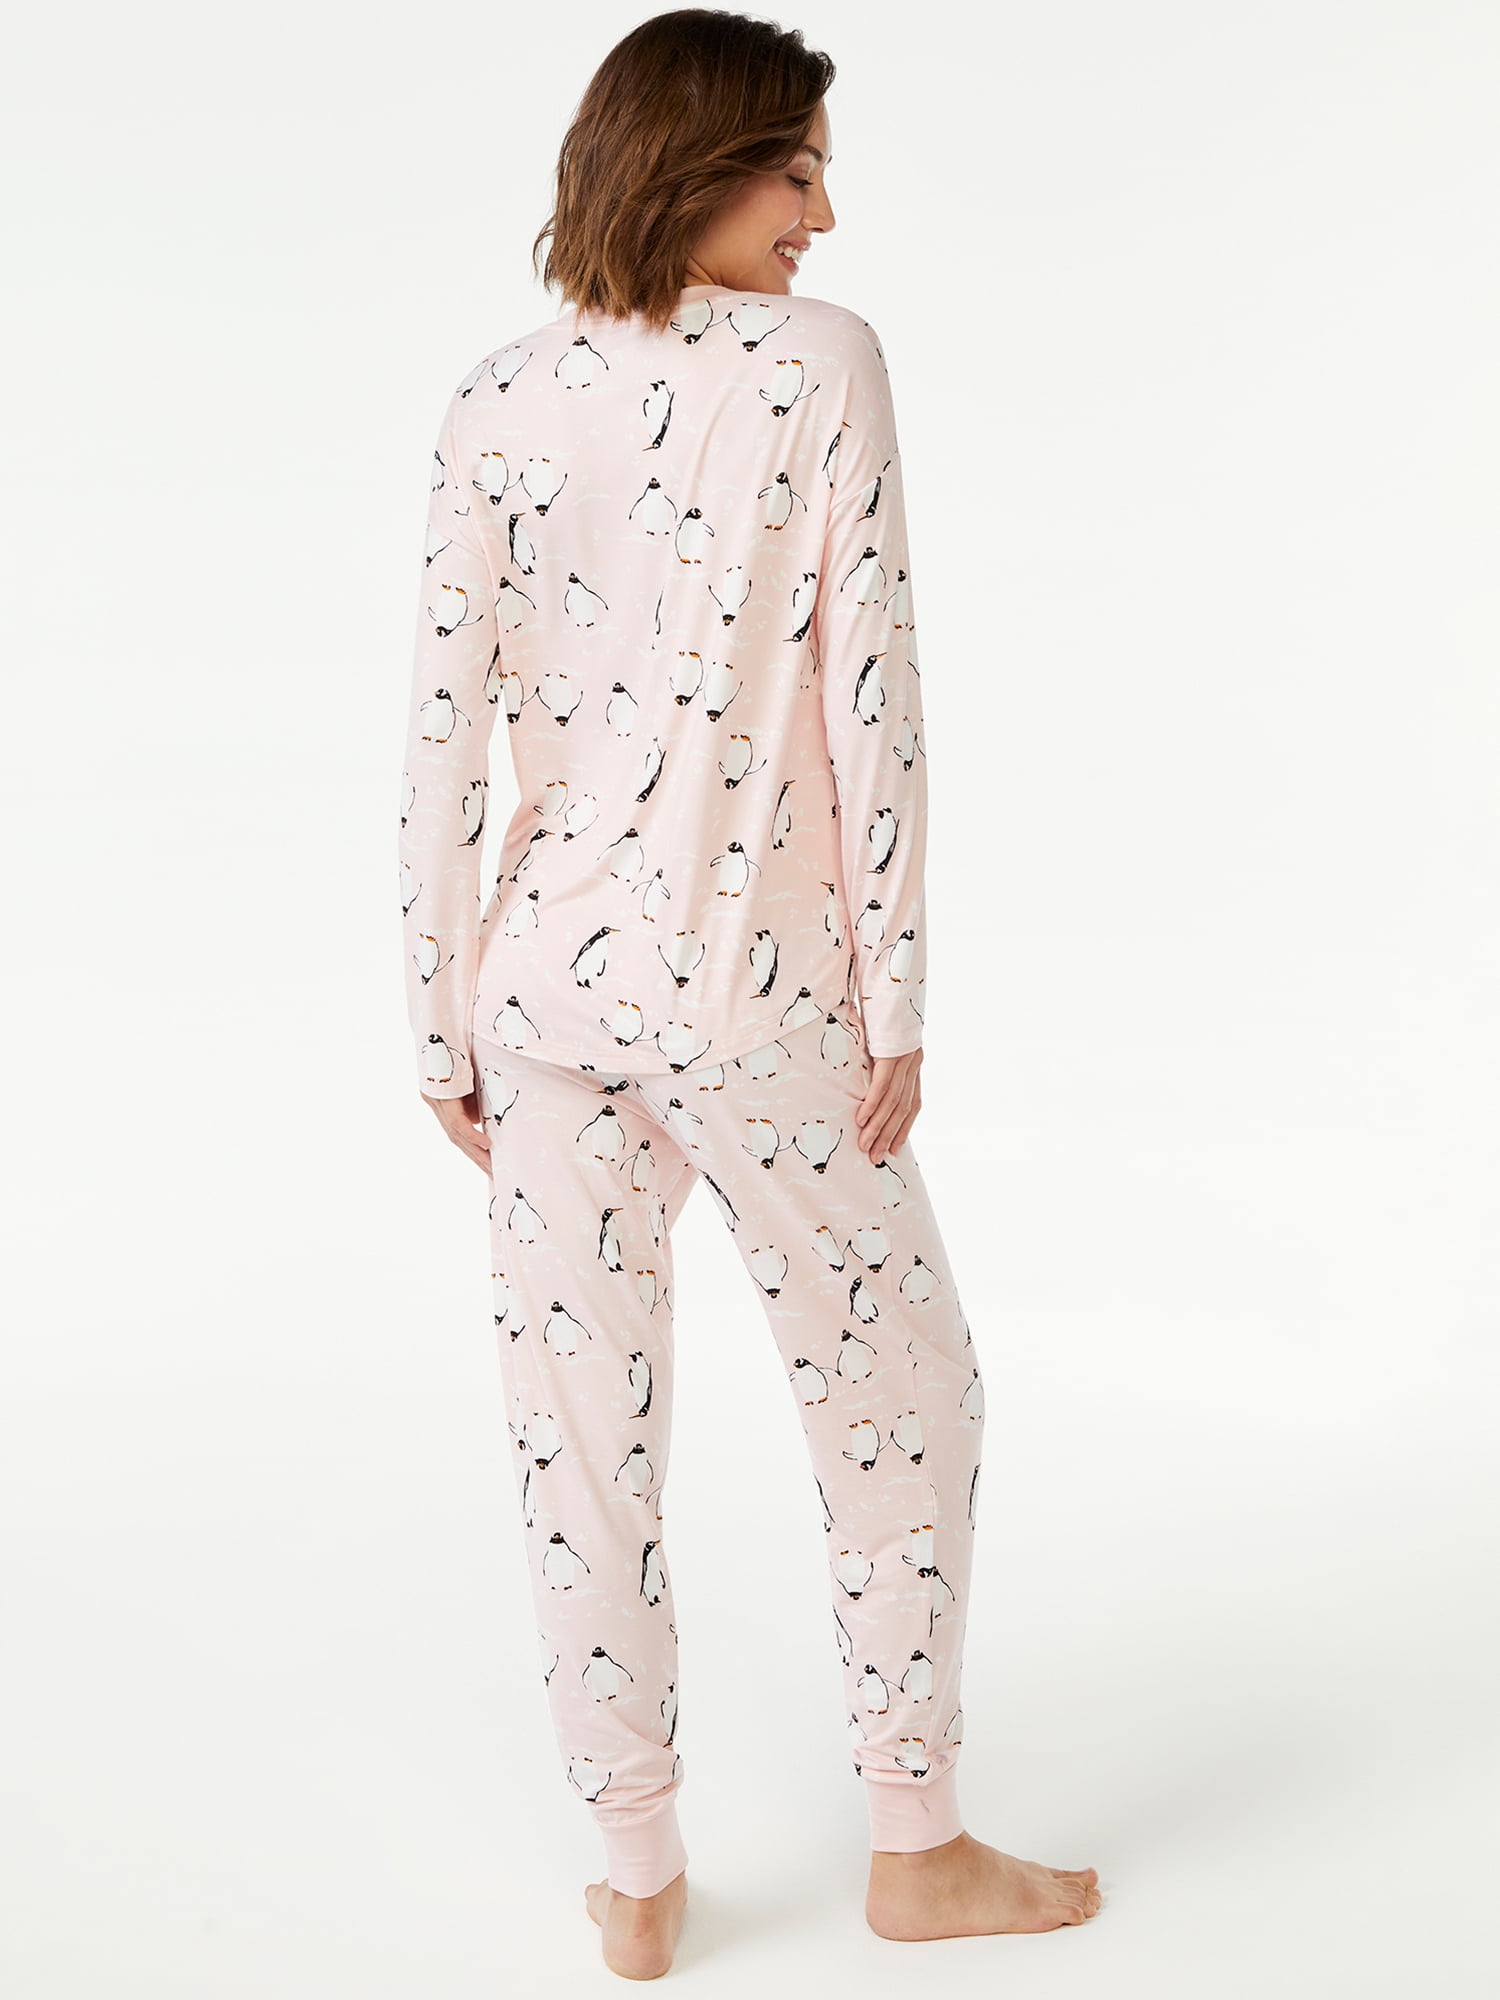 Ladies Womens Pyjamas Set Long Sleeve Top Nightwear Pajamas Z9T4 